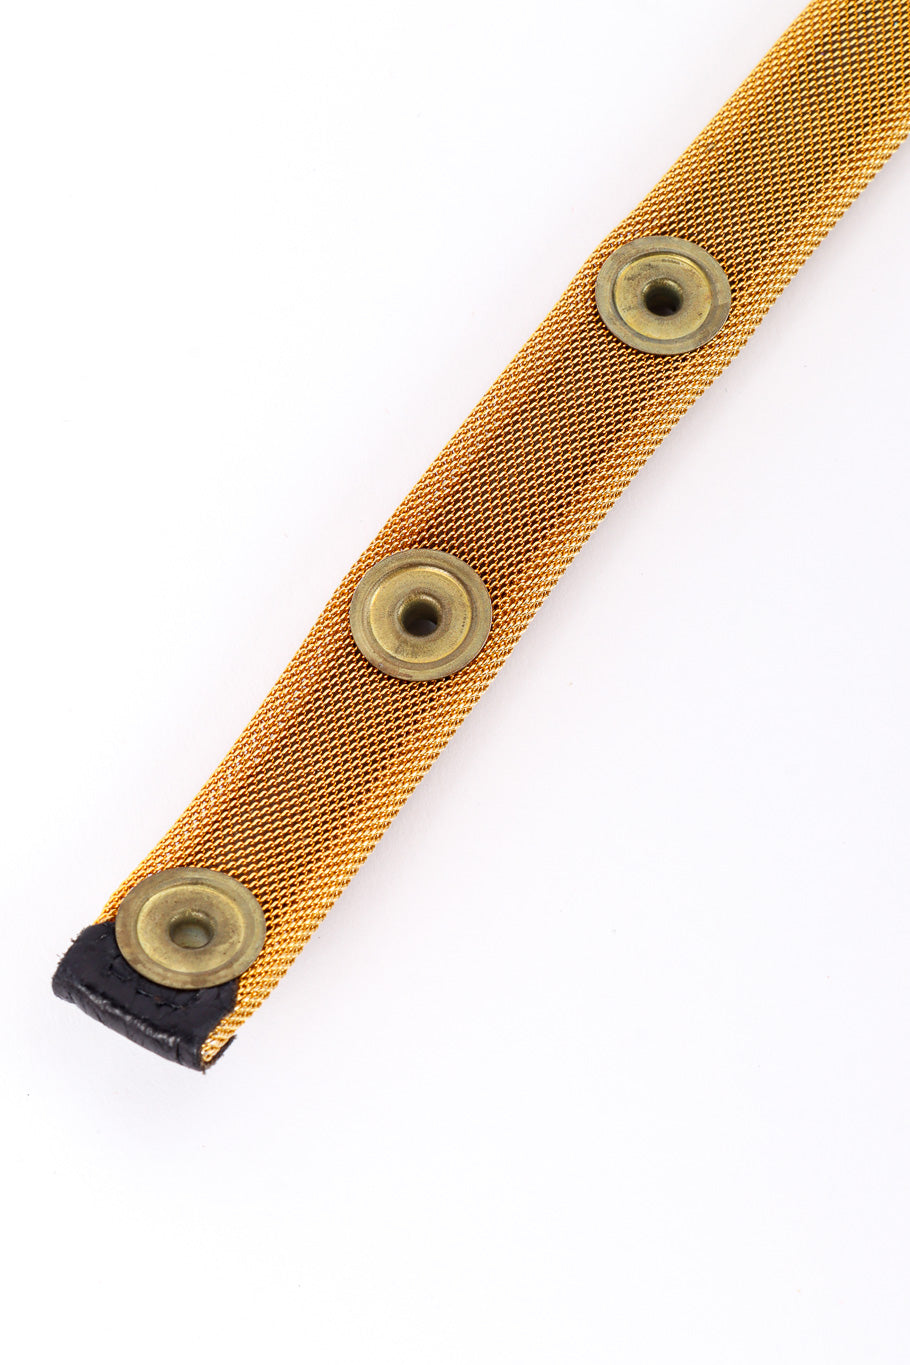 Vintage Lion Face Chain Drop Belt back button hardware @recessla